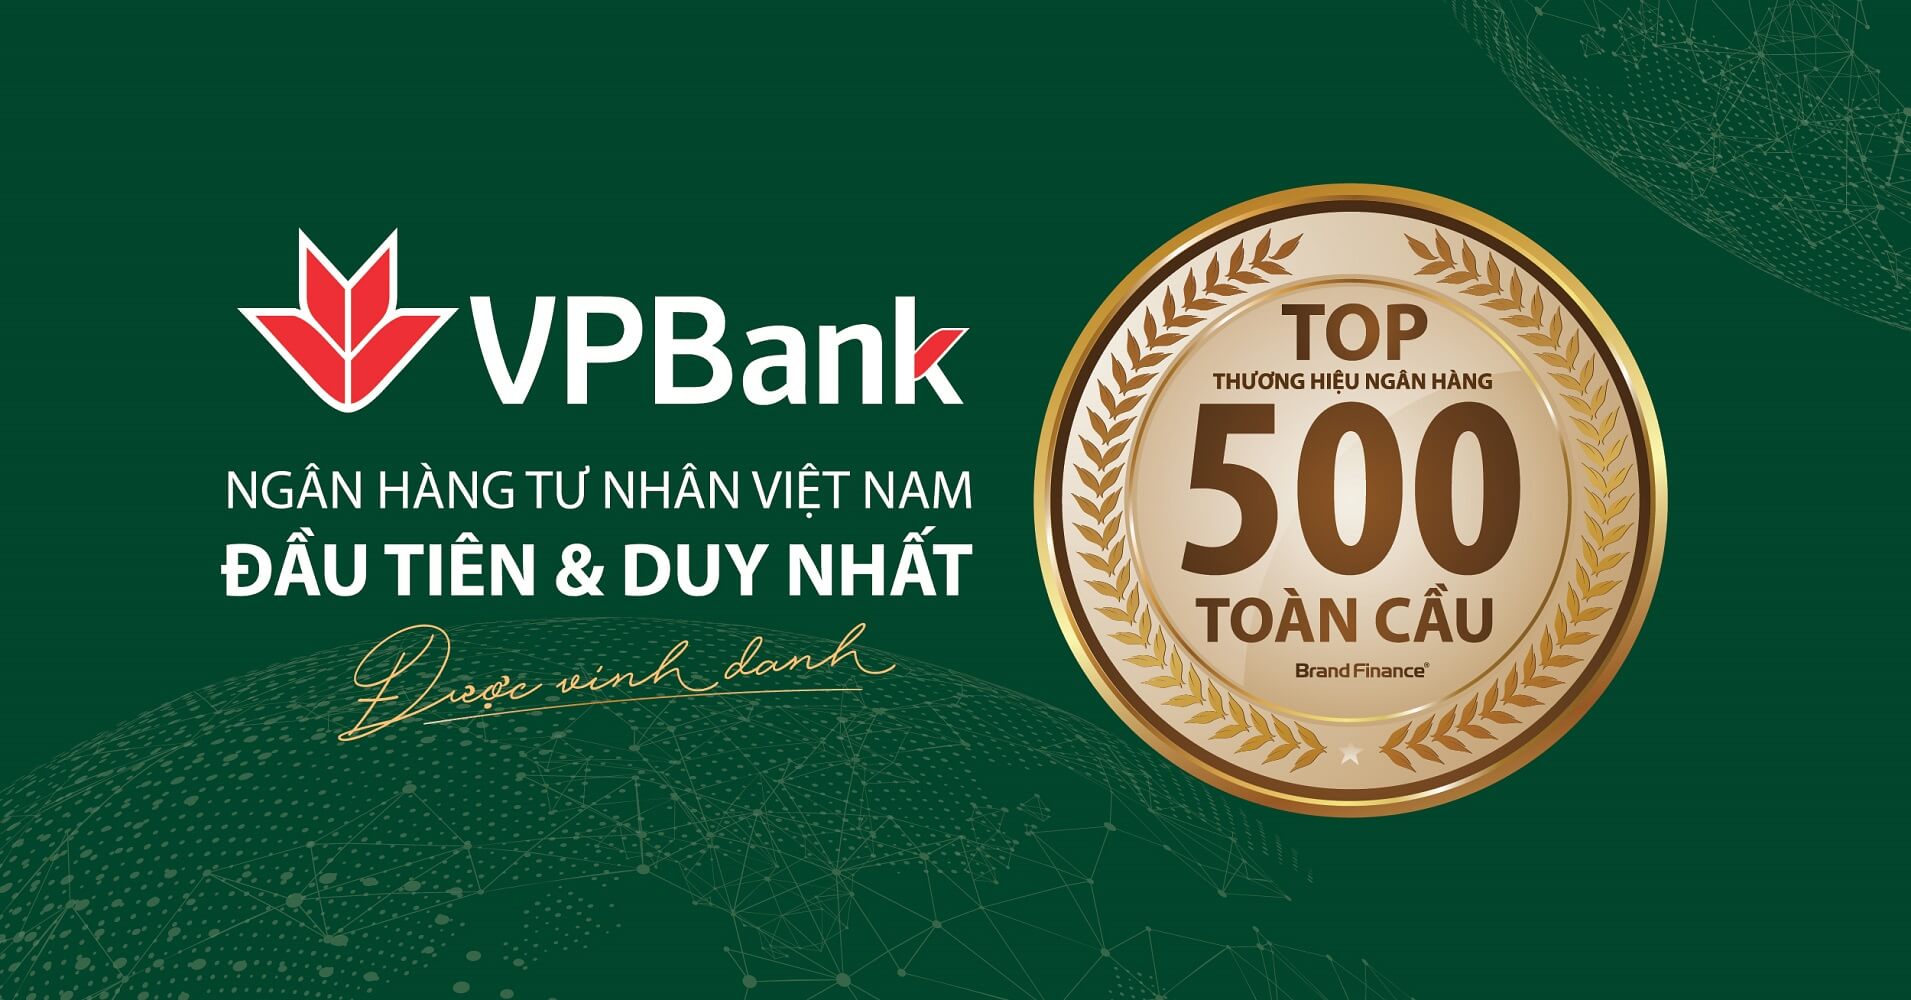 Tri ân Ngân hàng VP Bank HN đã cử CBNV học VBA Excel tại IMIC